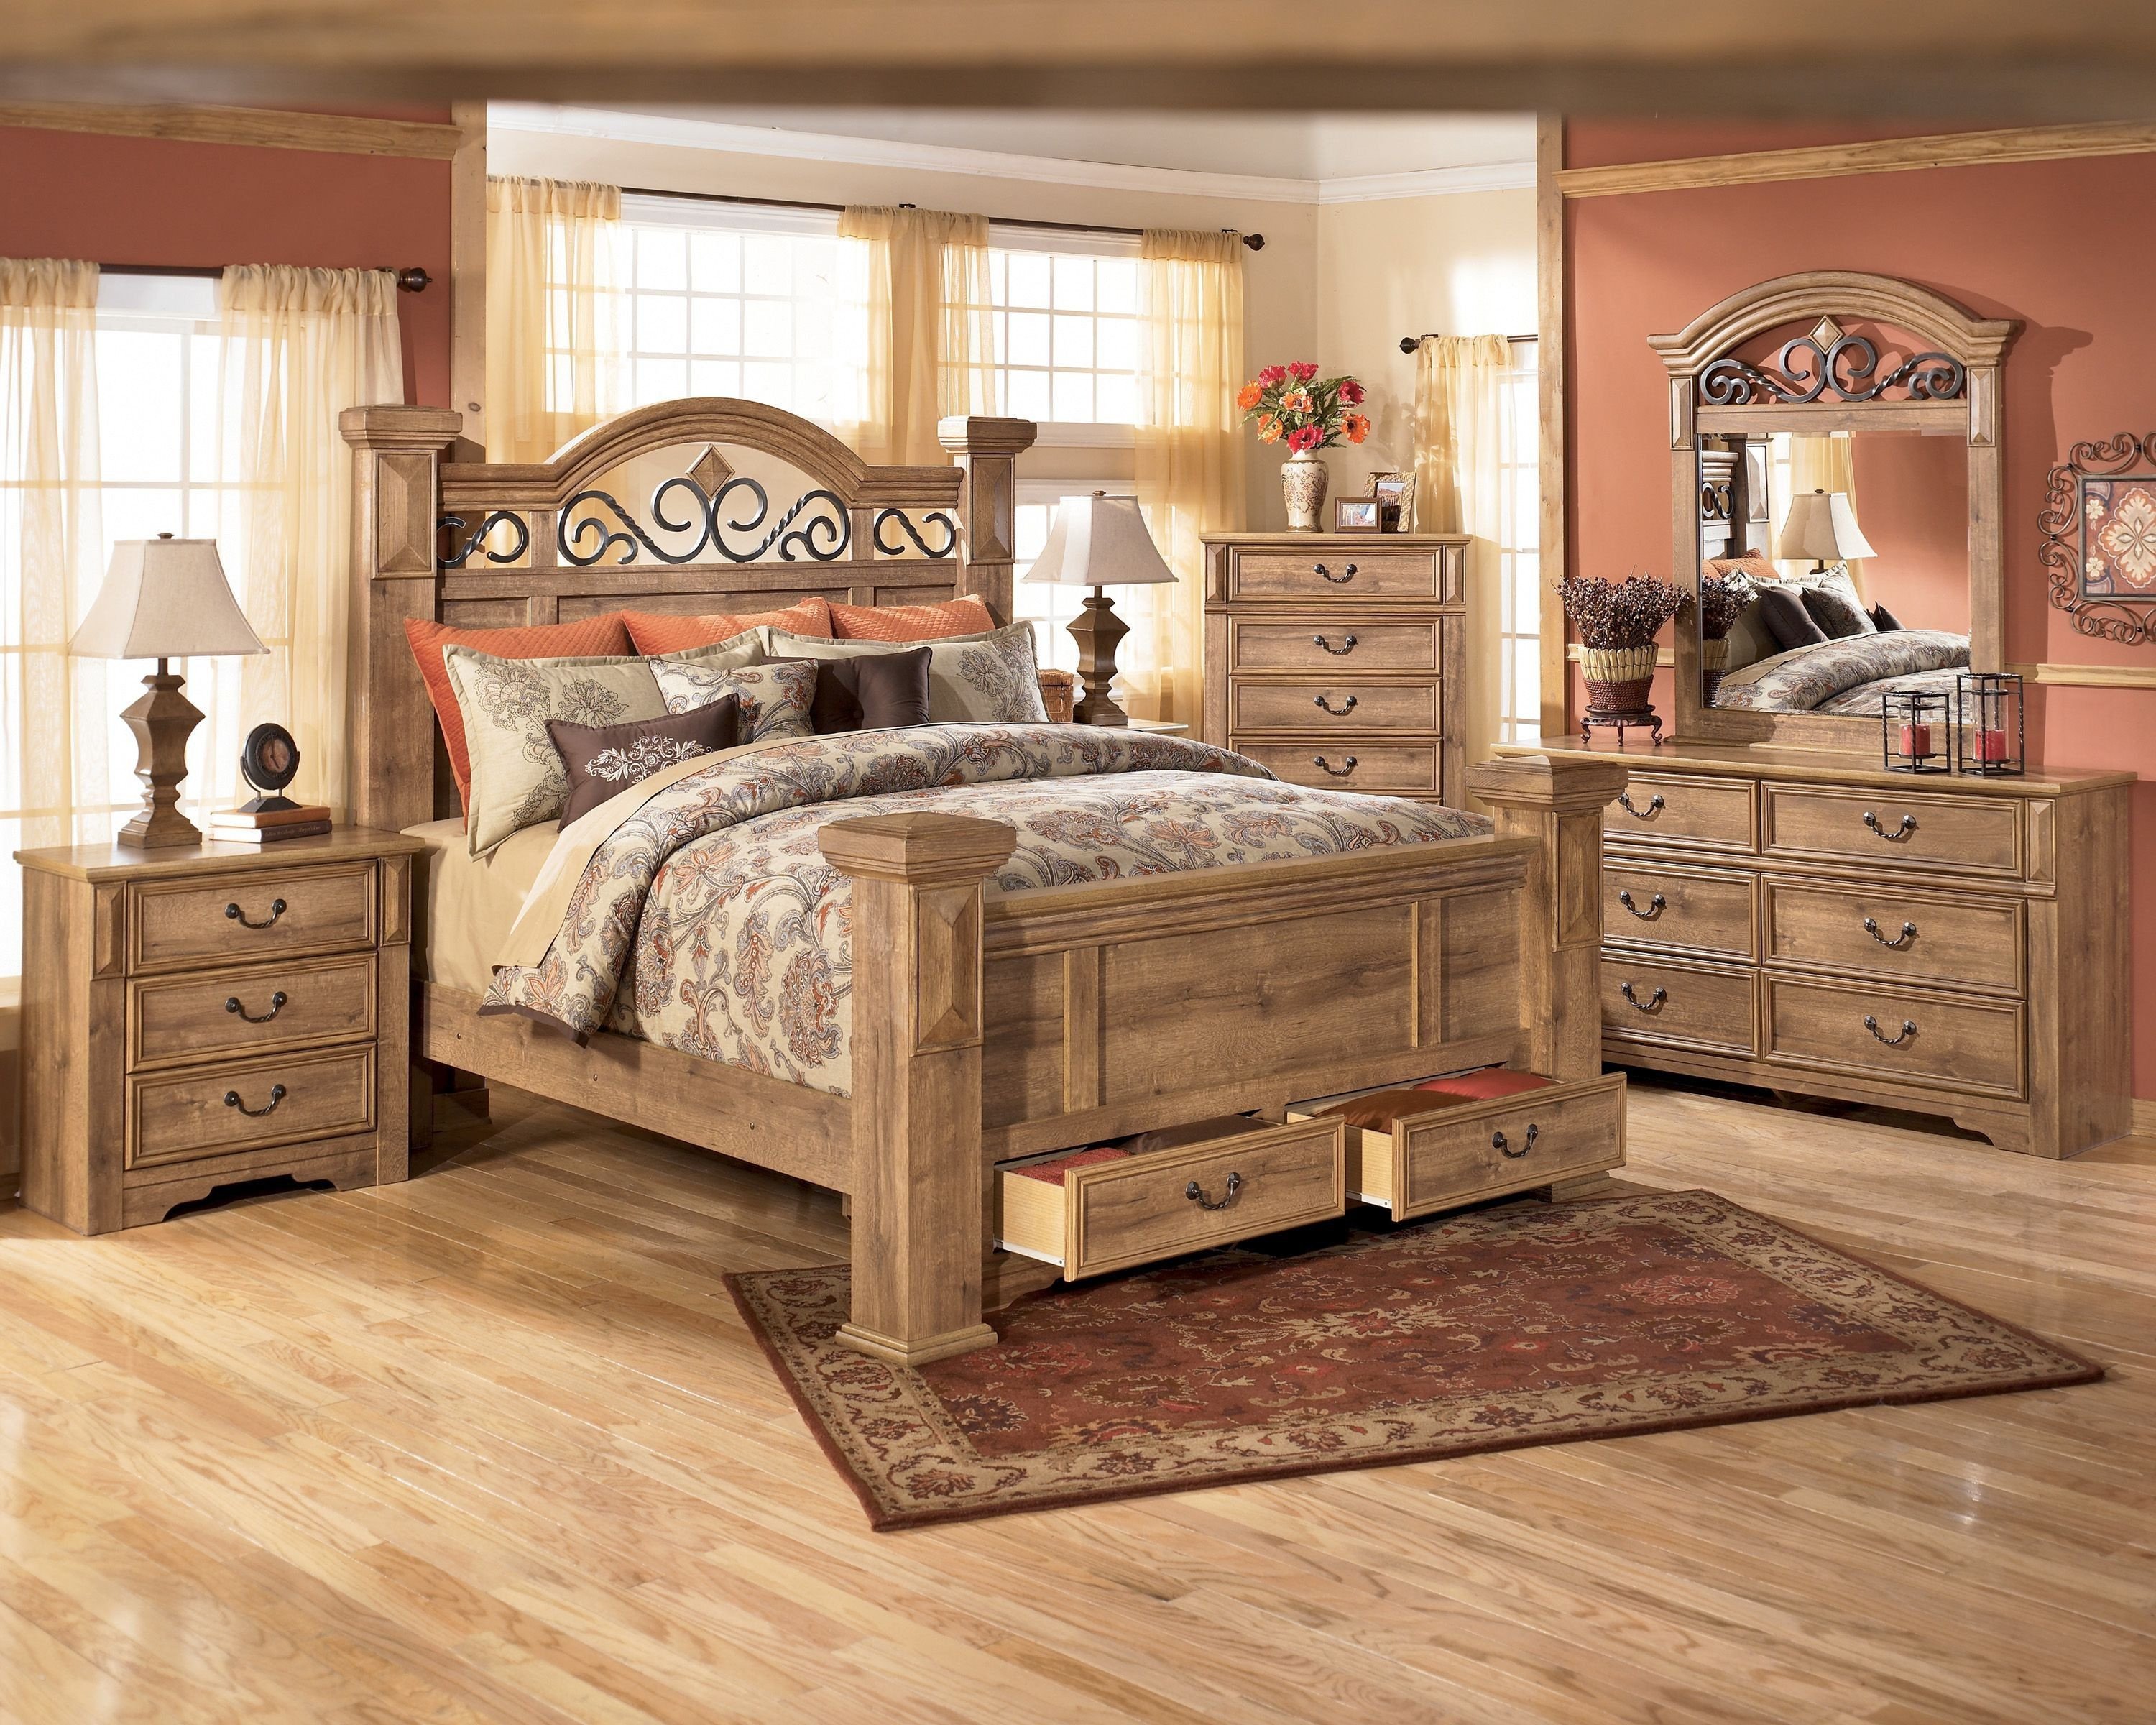 bobs king size bedroom furniture